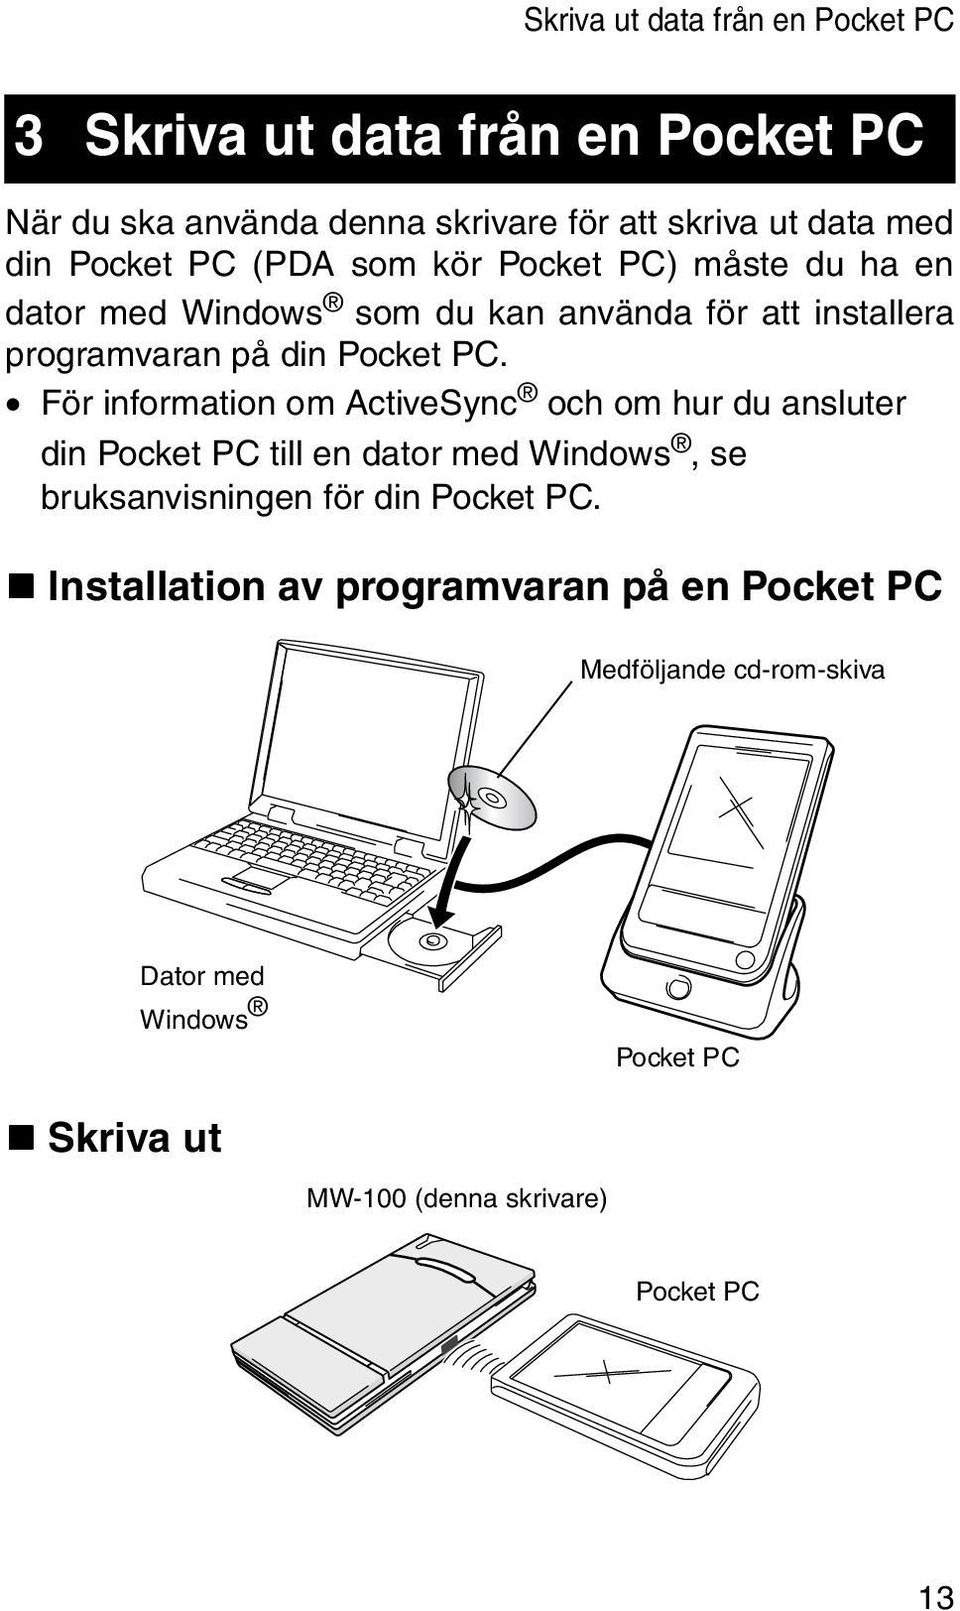 För information om ActiveSync och om hur du ansluter din Pocket PC till en dator med Windows, se bruksanvisningen för din Pocket PC.